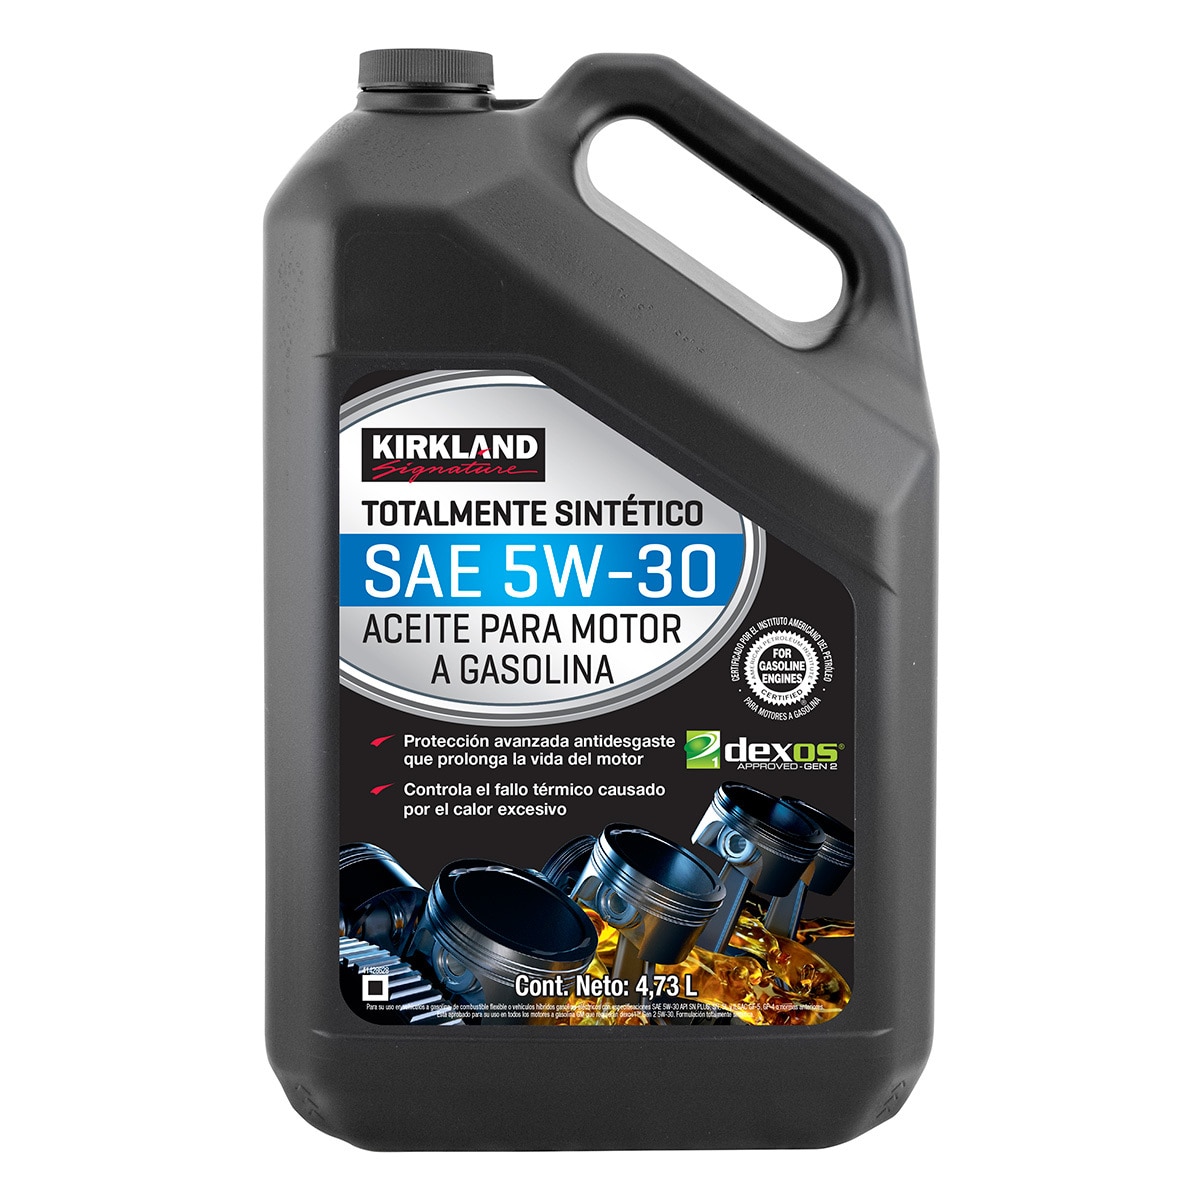 Aceite de Motor STP Completamente Sintetico 5W-40 5 Cuartos